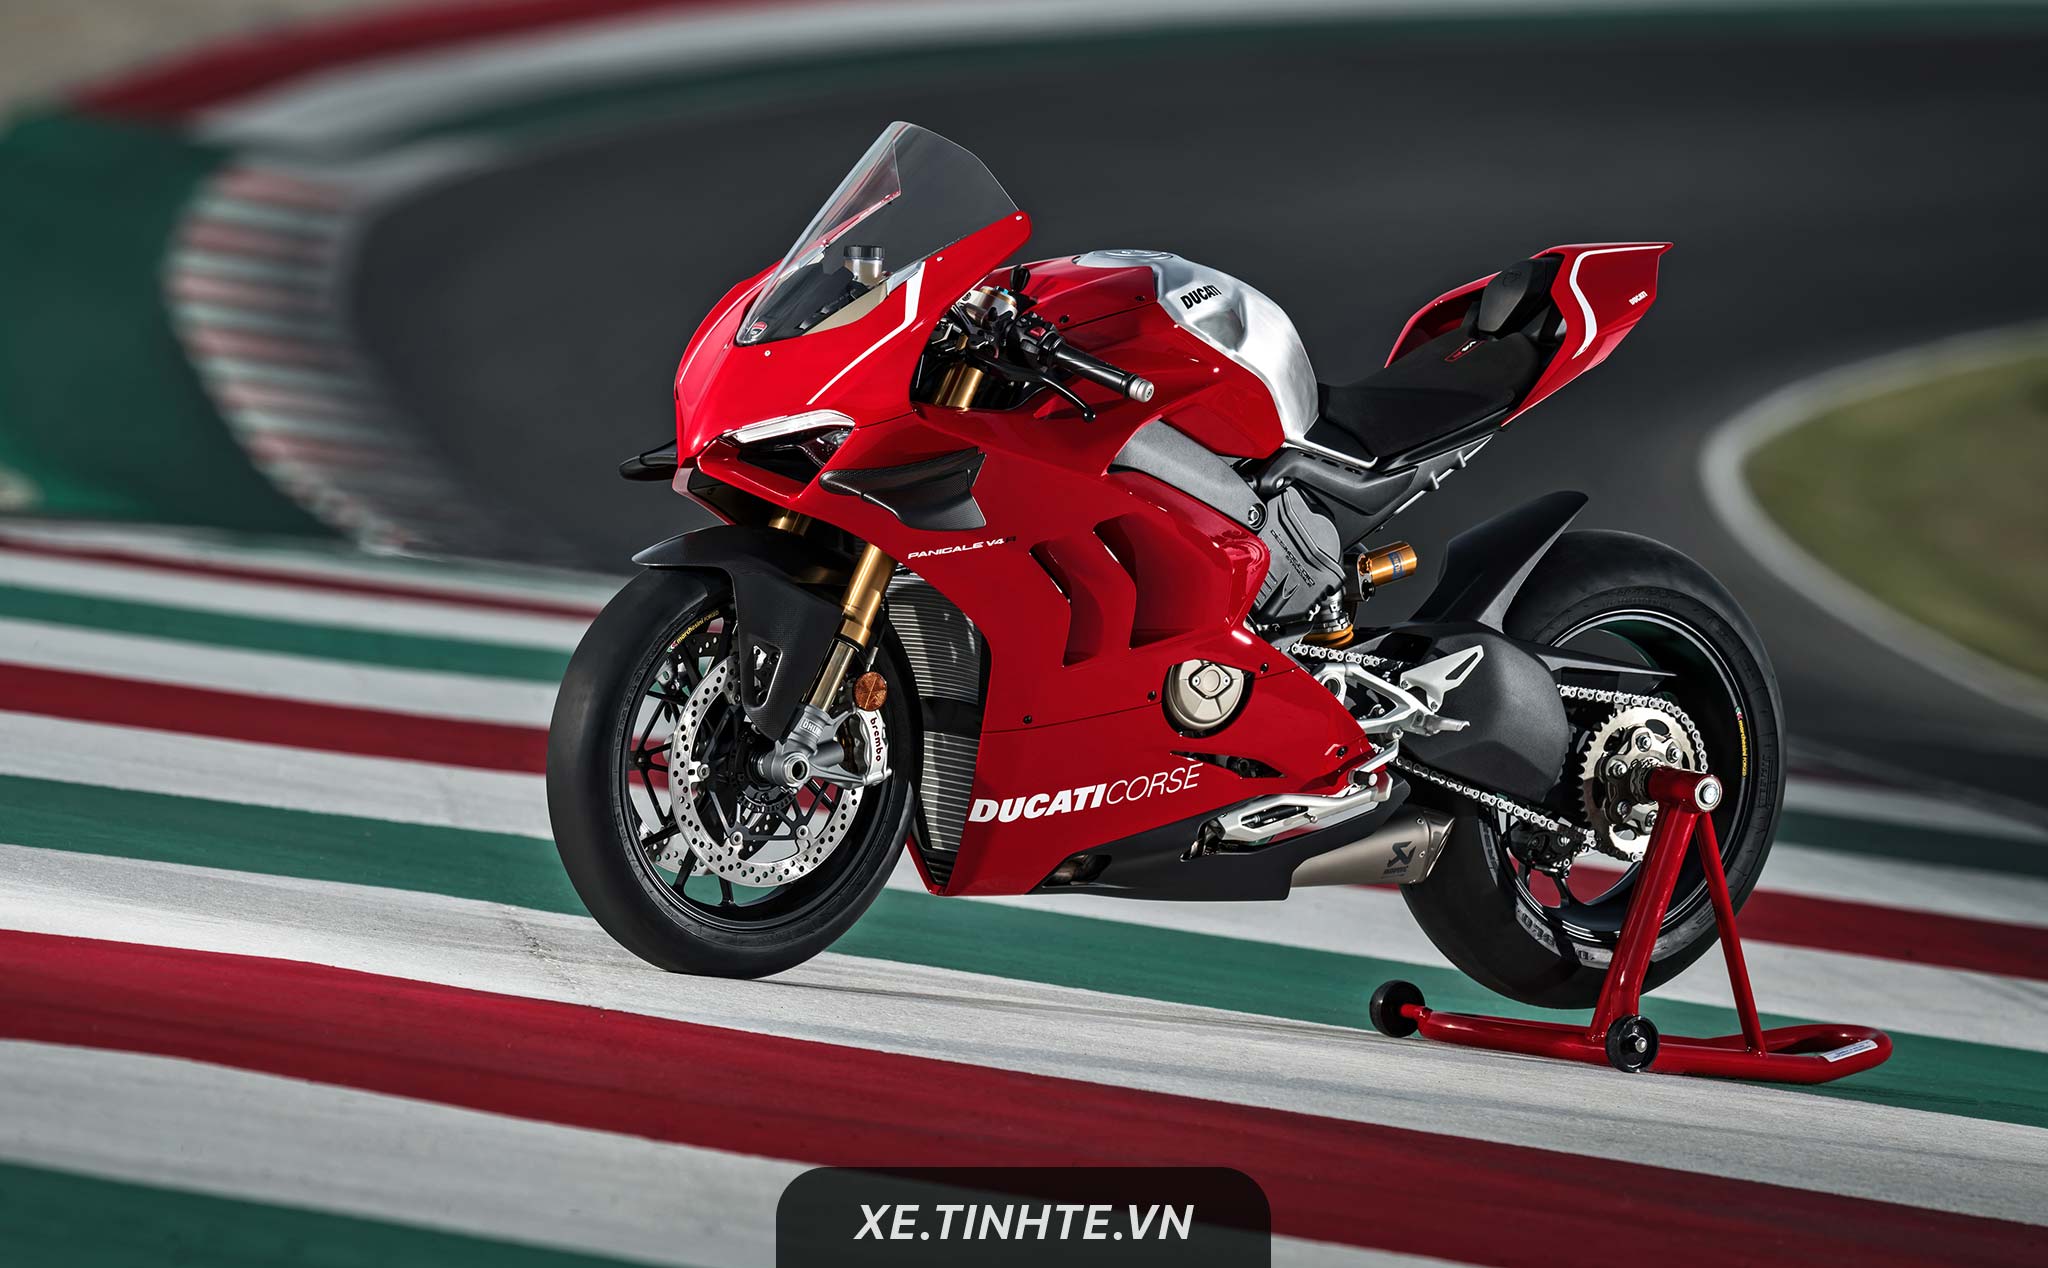 [EICMA18] Ducati Panigale V4 R: chiếc supersport mạnh mẽ nhất của Ducati với công suất 221 mã lực